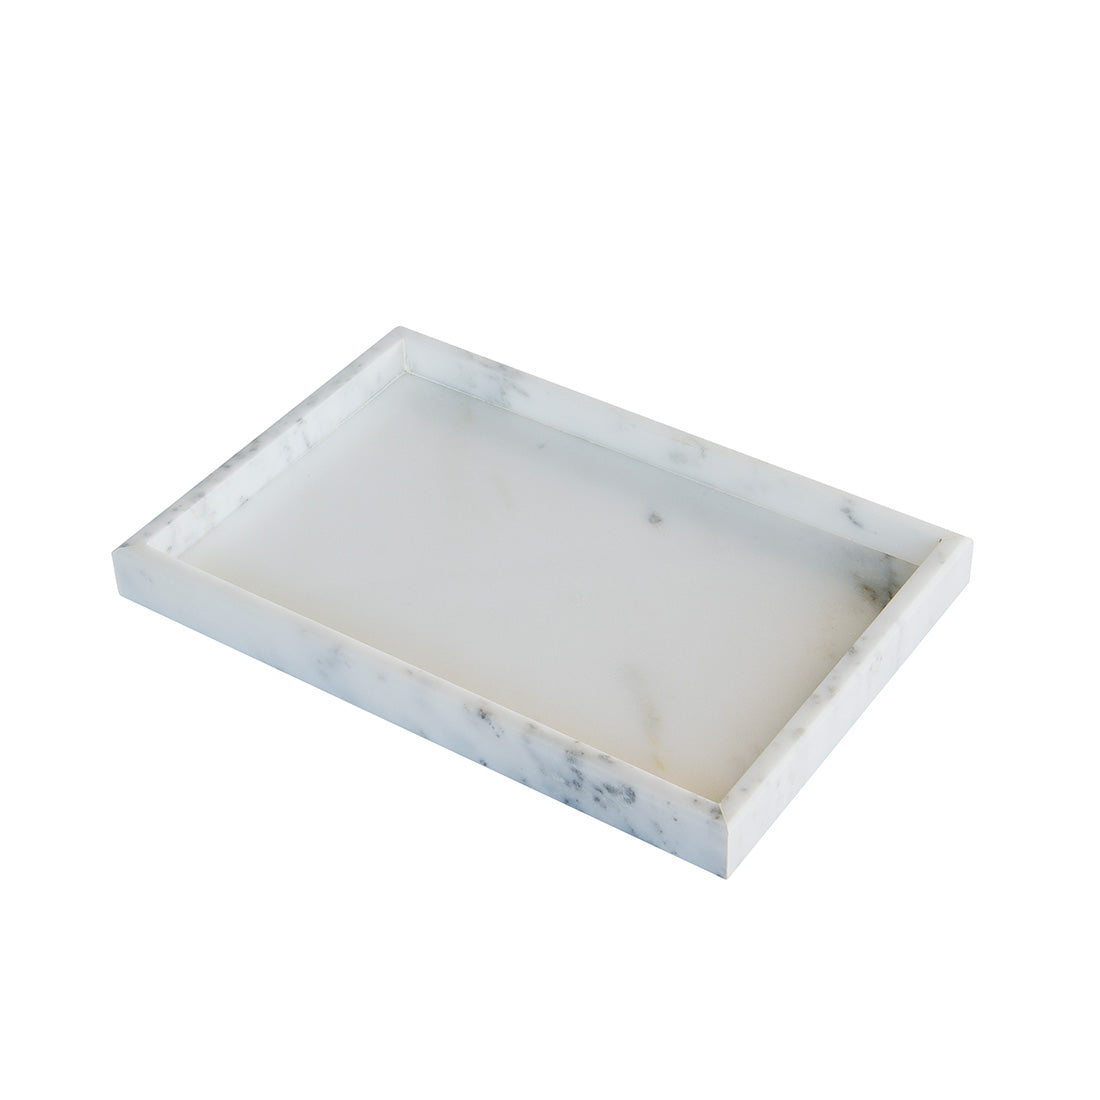 Marbi marble tray - white - 20x30 cm